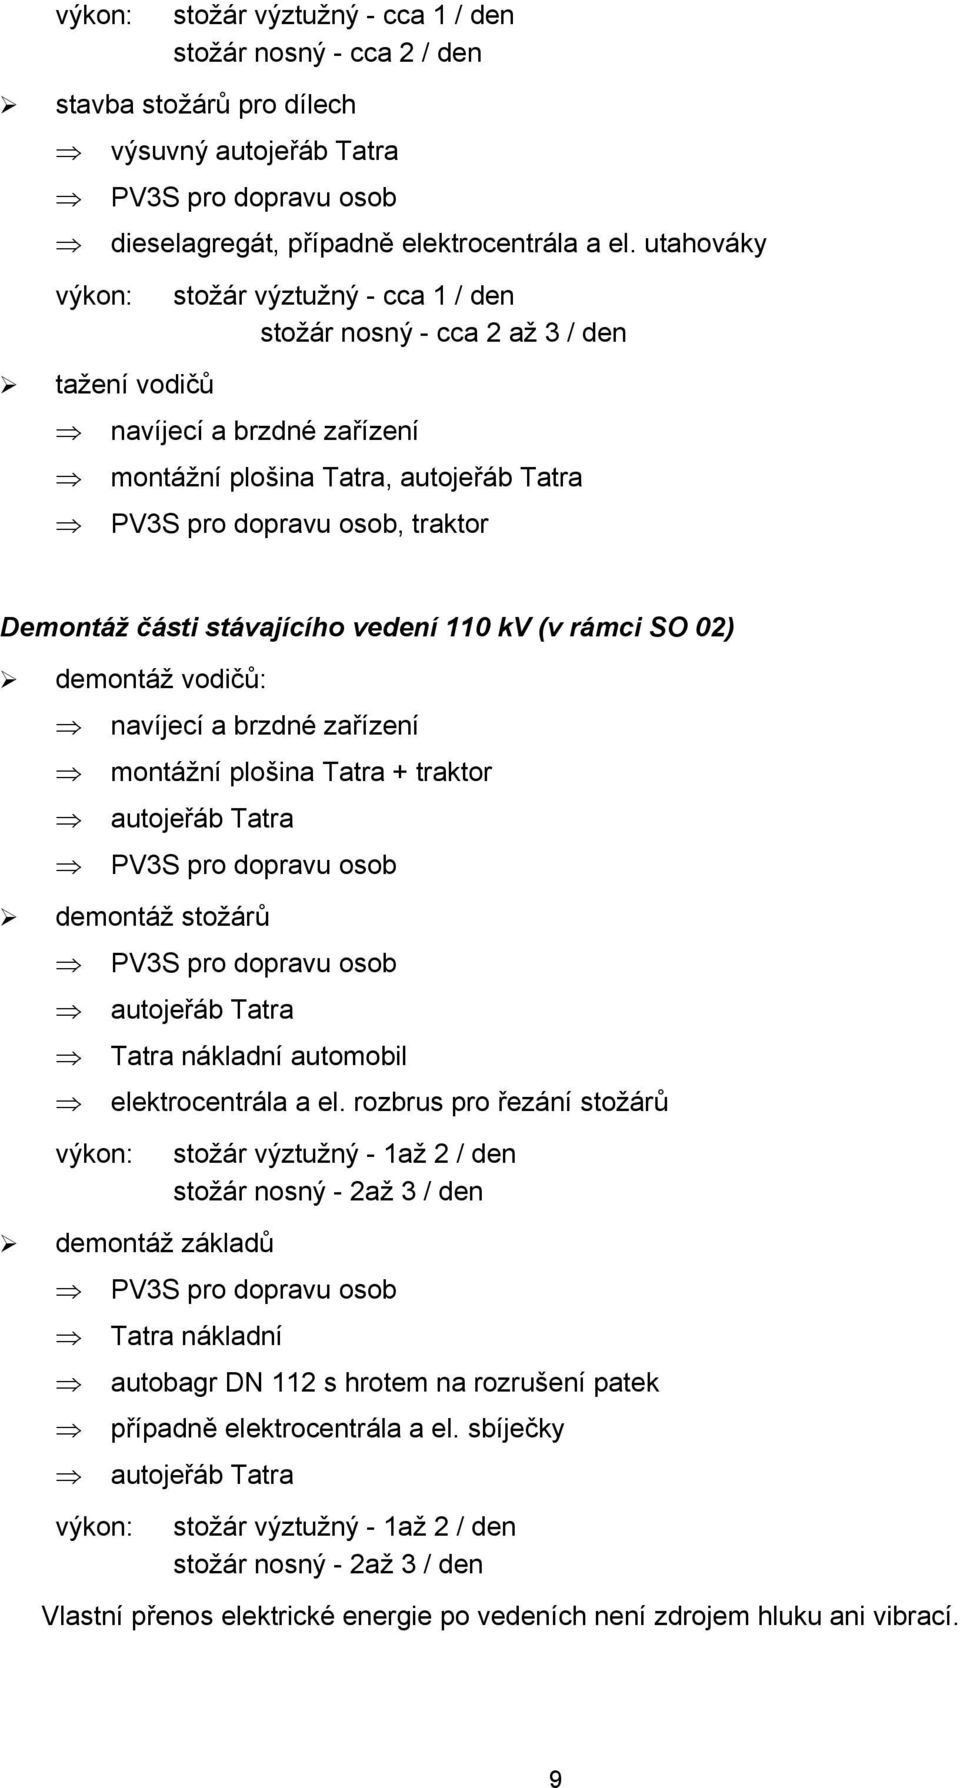 části stávajícího vedení 110 kv (v rámci SO 02) demontáž vodičů: navíjecí a brzdné zařízení montážní plošina Tatra + traktor autojeřáb Tatra PV3S pro dopravu osob demontáž stožárů PV3S pro dopravu